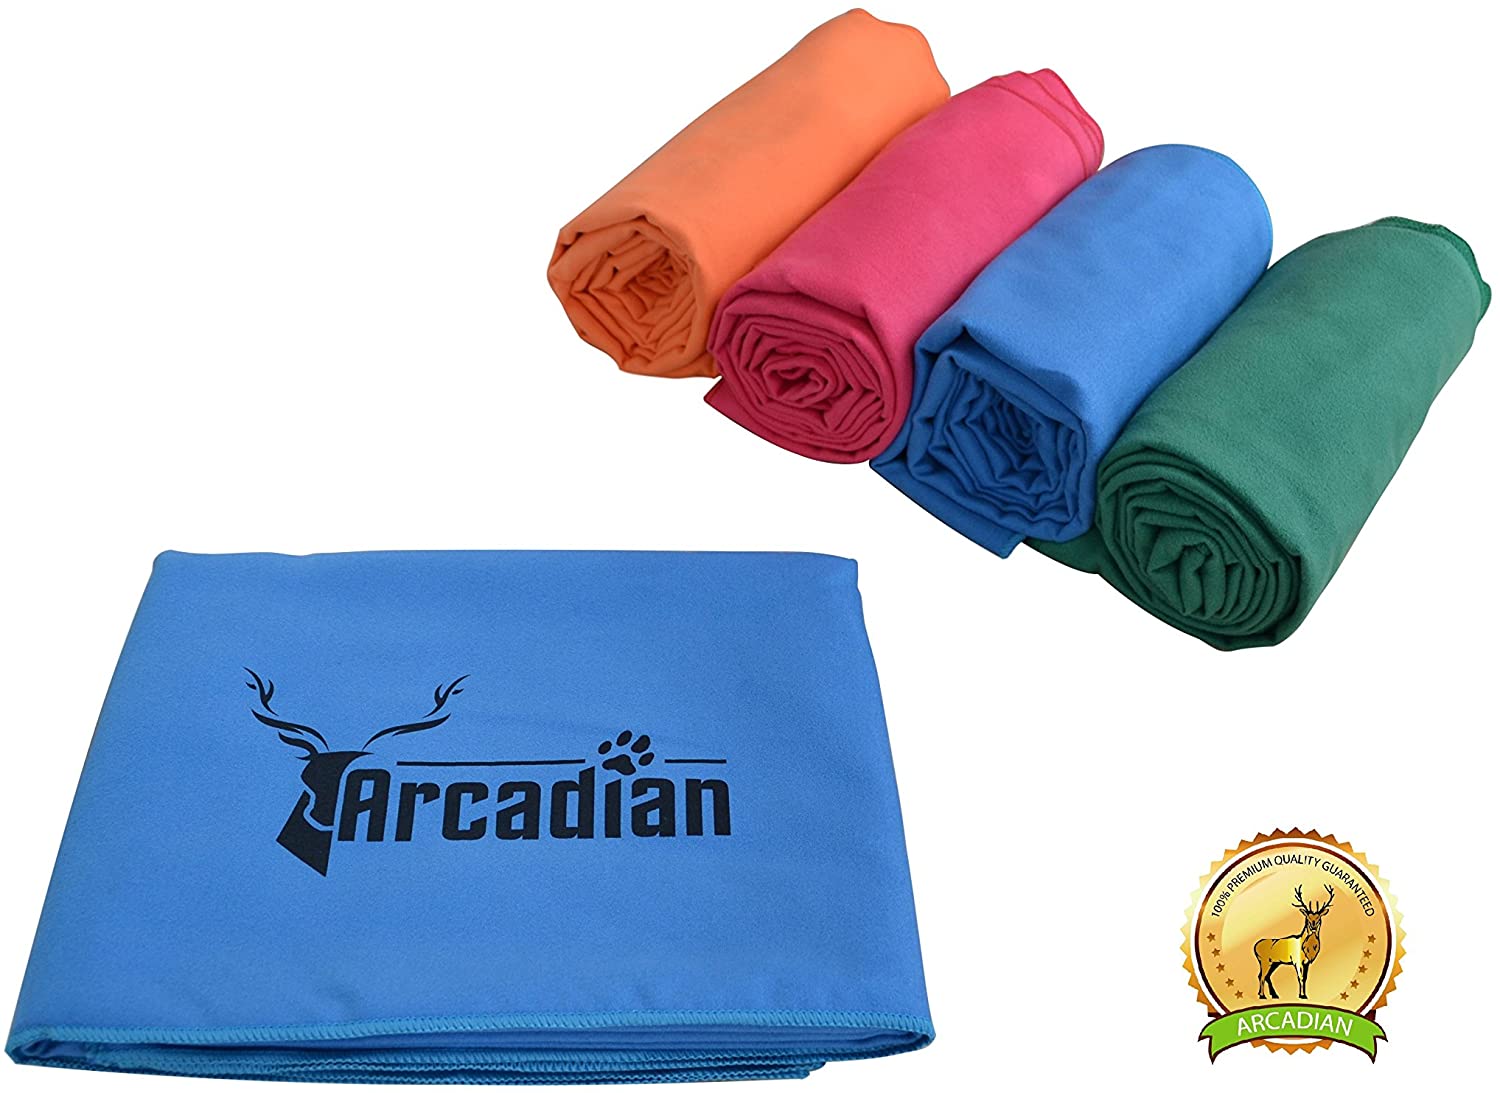  Toalla de microfibras grande para perro por Arcadian en azul, verde, naranja, y rosa. Estas vibrantes toallas son el regalo perfecto para su amada mascota. Hecha de microfibra de calidad de primera, esta toalla es ligera, de secado rápido y súper 